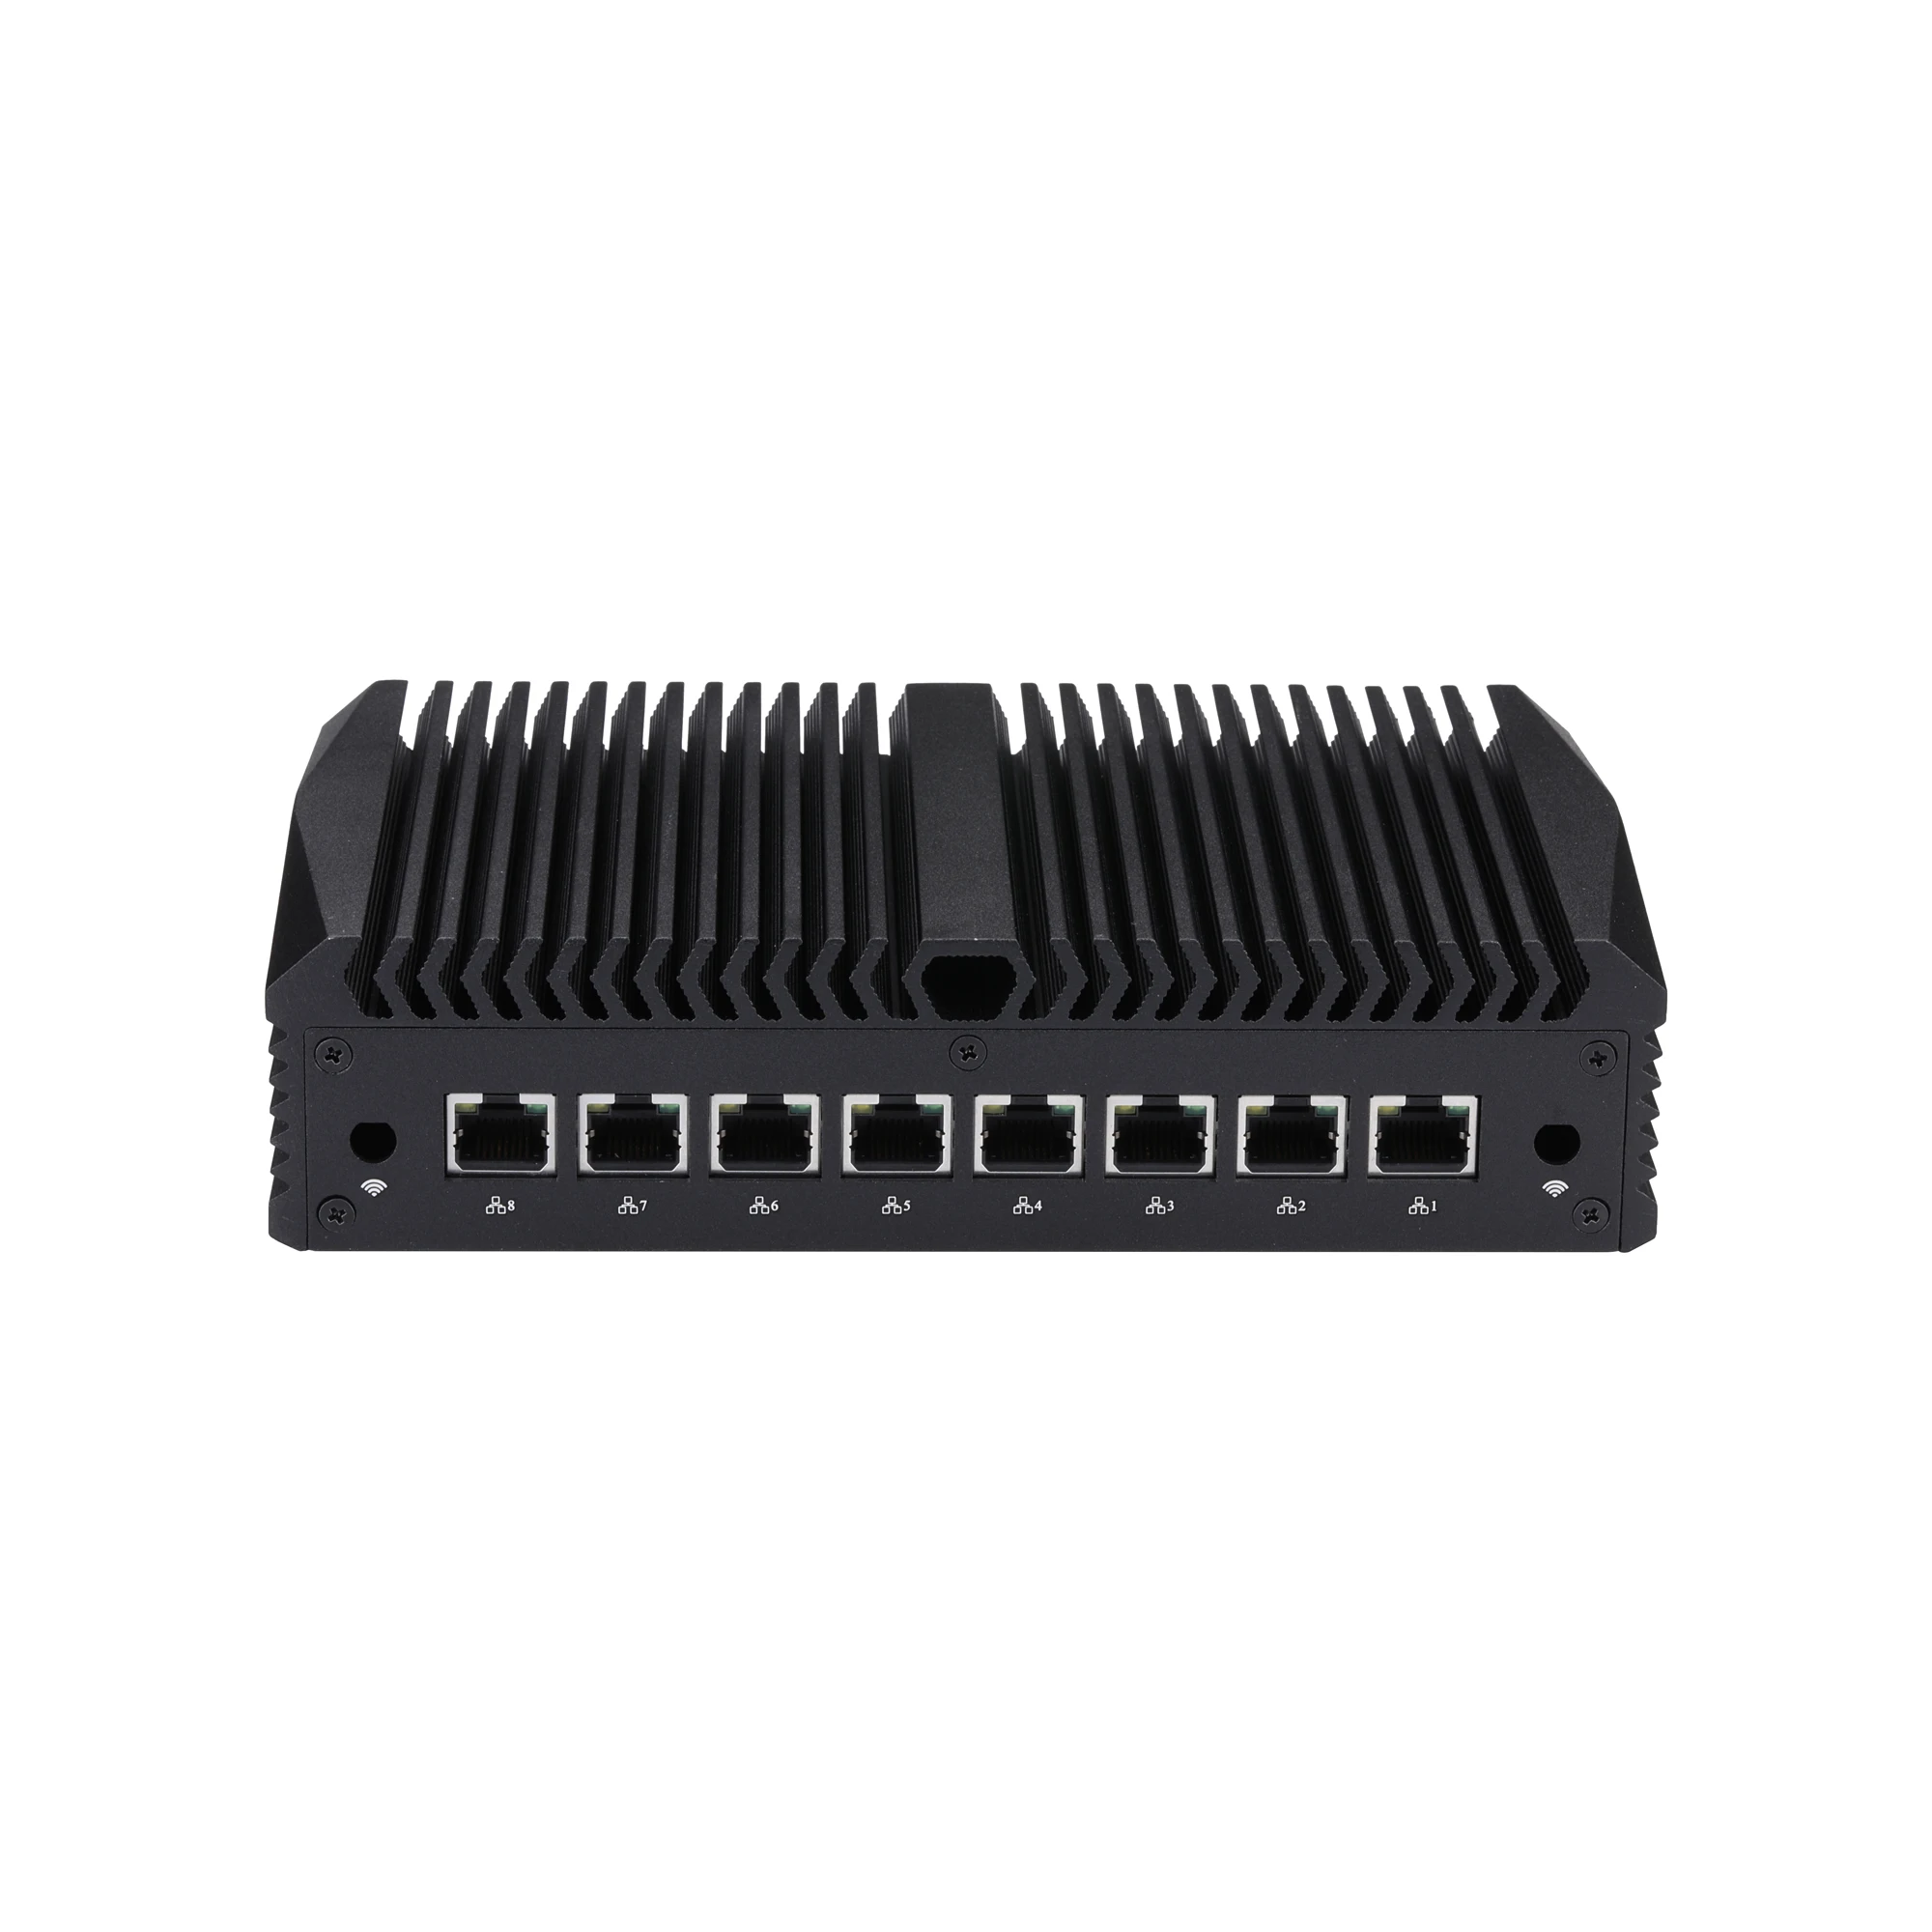 Qotom-Mini ordenador sin ventilador, 8x2,5G Lan,Gen 8th, 10th, 4305U, 10110U, 10210U, 10710U, DP, 4USB3.0, Proxmox, Pfsense, 8 LANs